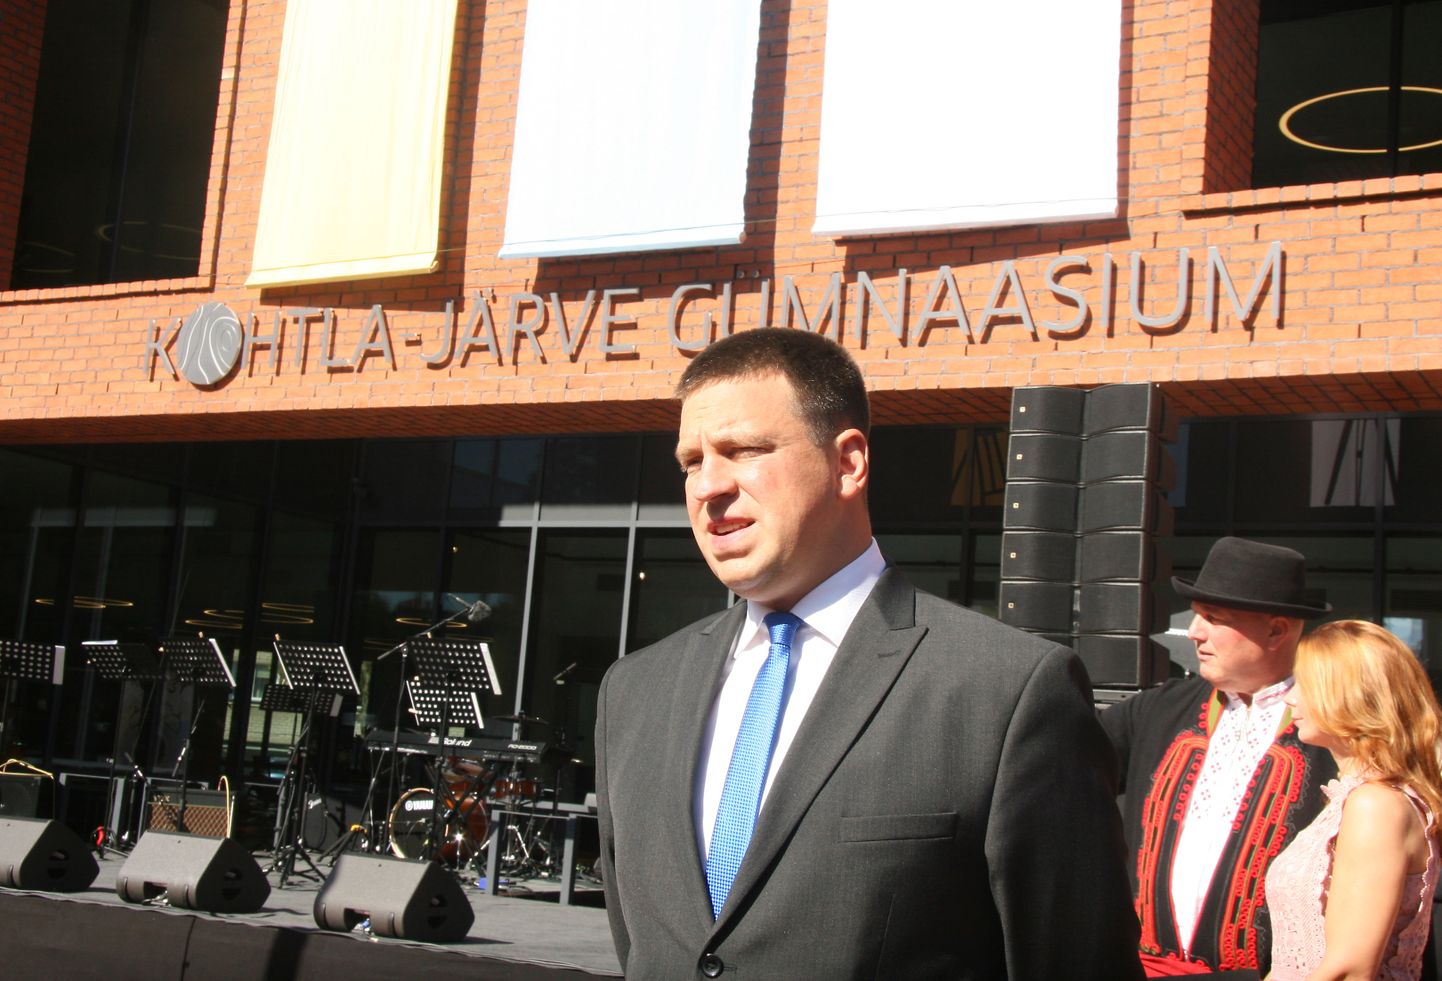 Премьер-министр Юри Ратас принял участие в церемонии открытия Кохтла-Ярвеской гимназии 1 сентября 2019 года. Сегодня его правительство решило направить гимназии Ида-Вирумаа на дистанционное обучение.